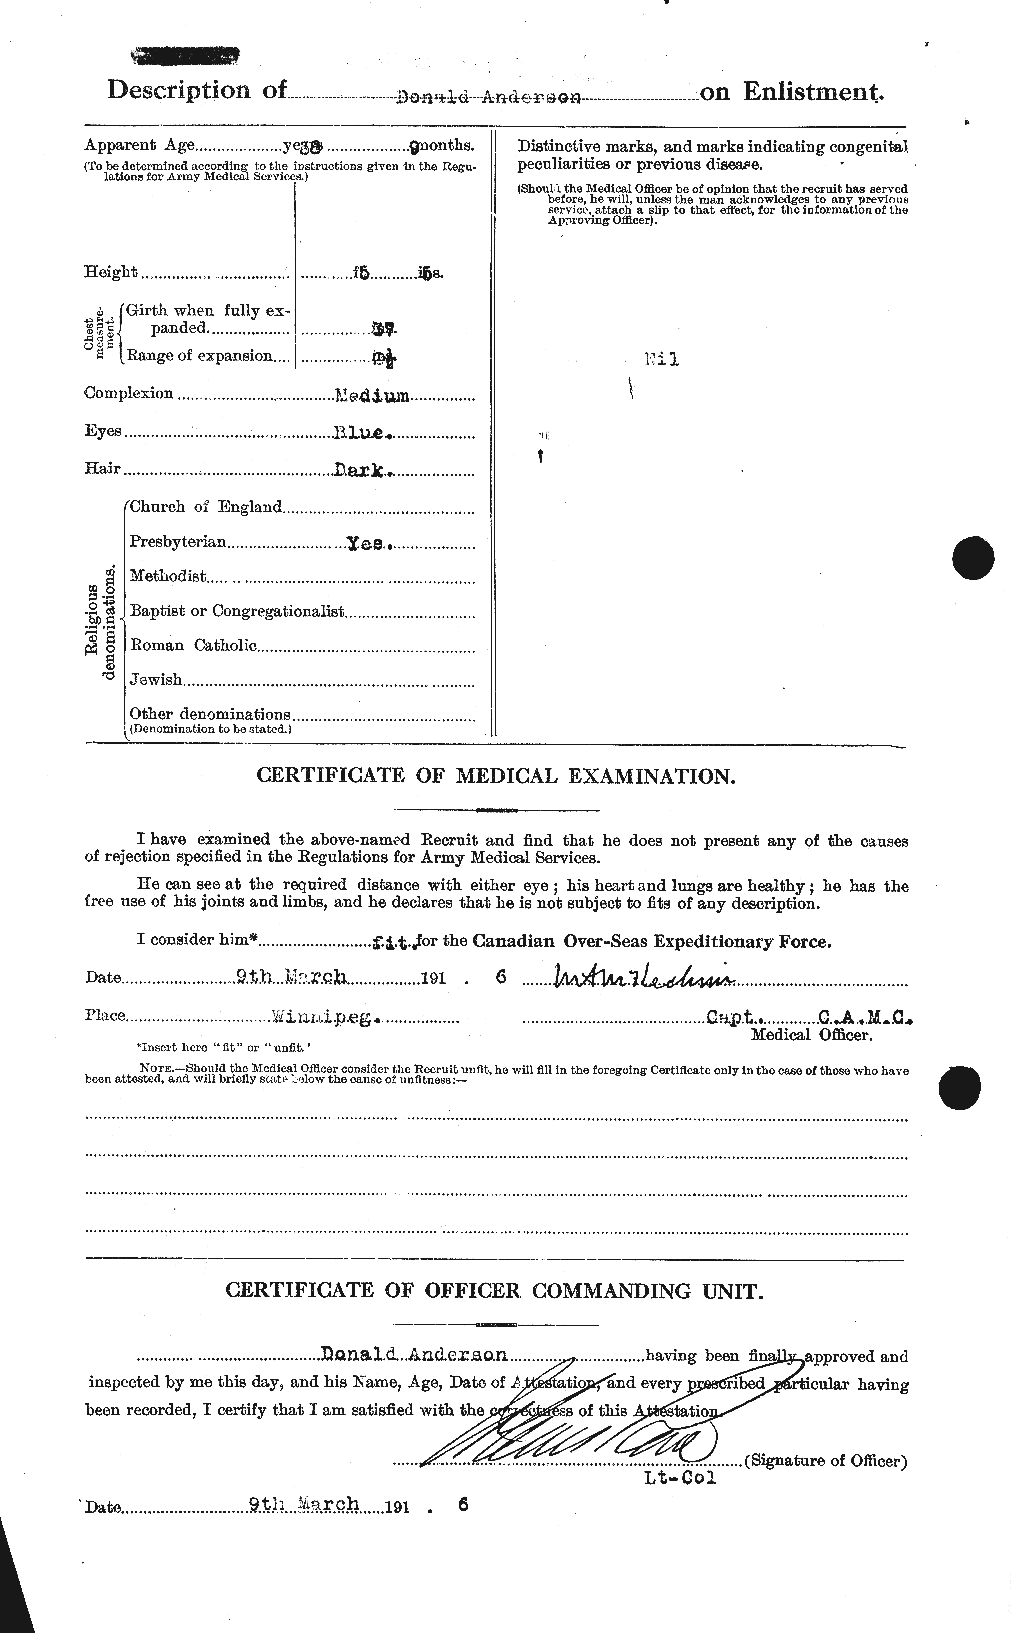 Dossiers du Personnel de la Première Guerre mondiale - CEC 209988b